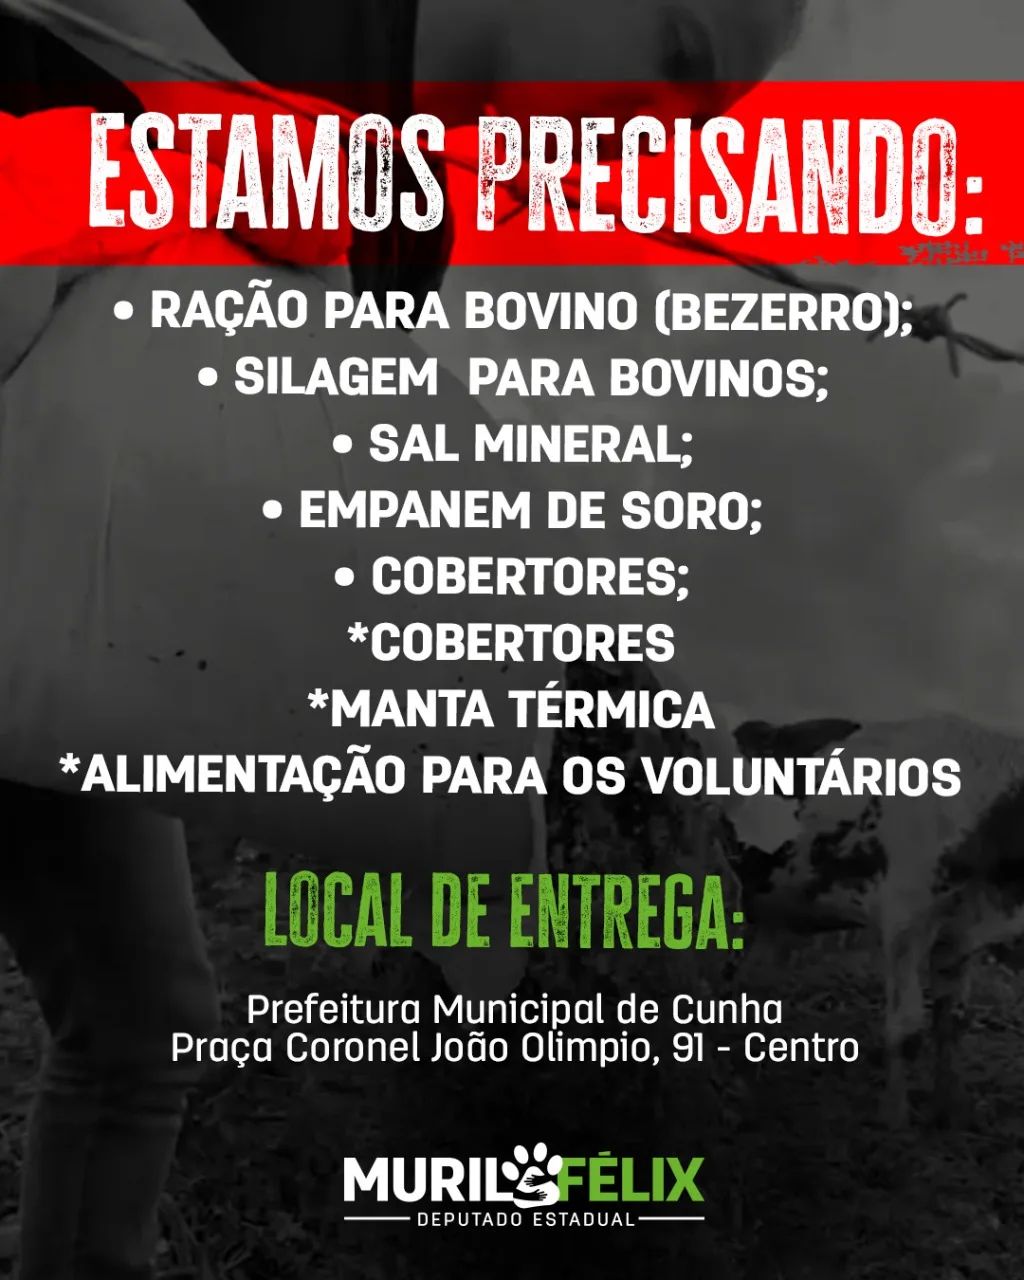 Grupo pede doações após resgatar bezerros em Cunha